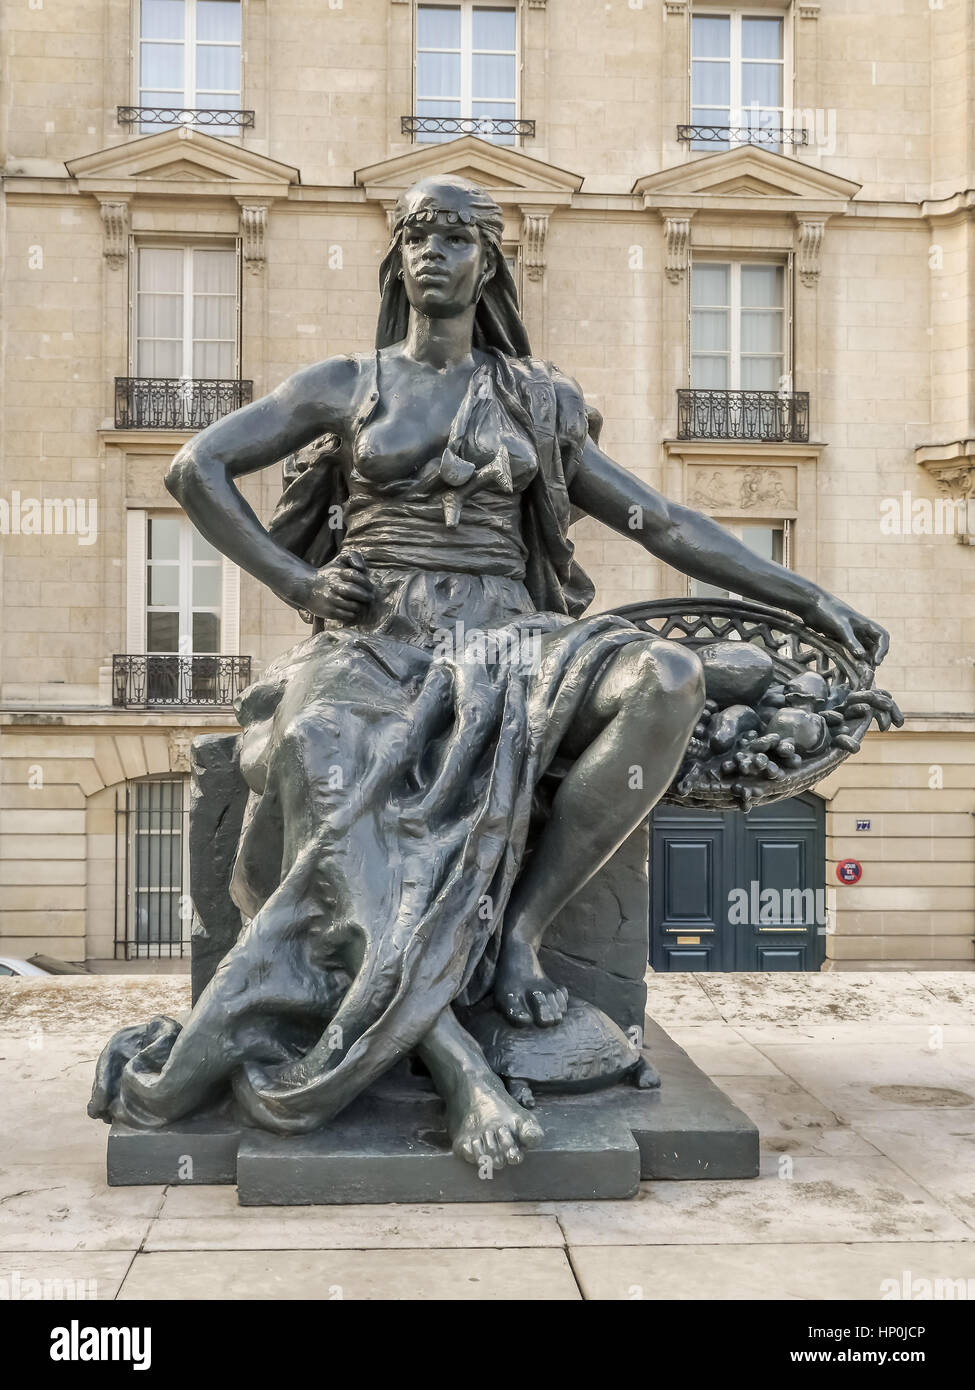 PARIS, Frankreich - 25. August 2013 - eine der sechs Statuen, die sechs Kontinente - Afrika außerhalb d ' Orsay Museum, Paris, Frankreich Stockfoto